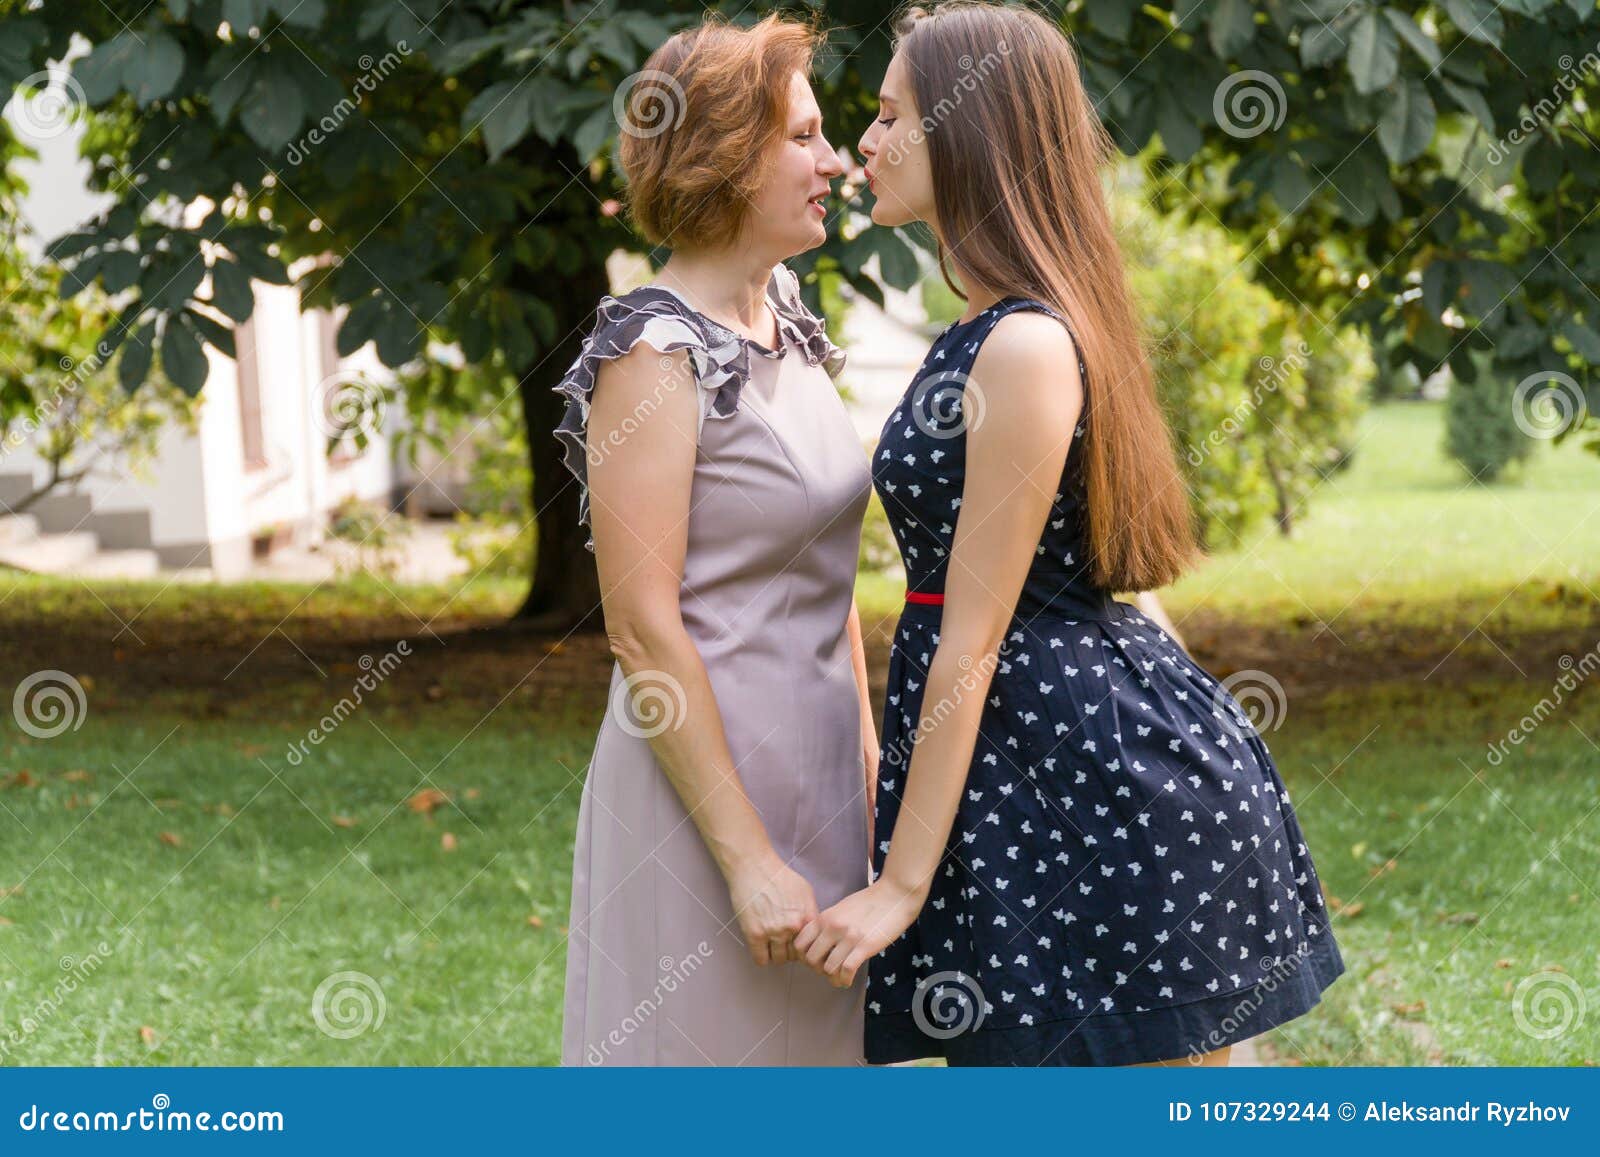 Мамы лесбиянки с русским переводом. Мама с дочкой выпускницей. Мама и взрослая дочь в парке. Мама и дочь выпускница. Взрослая дочка и мама в парке.